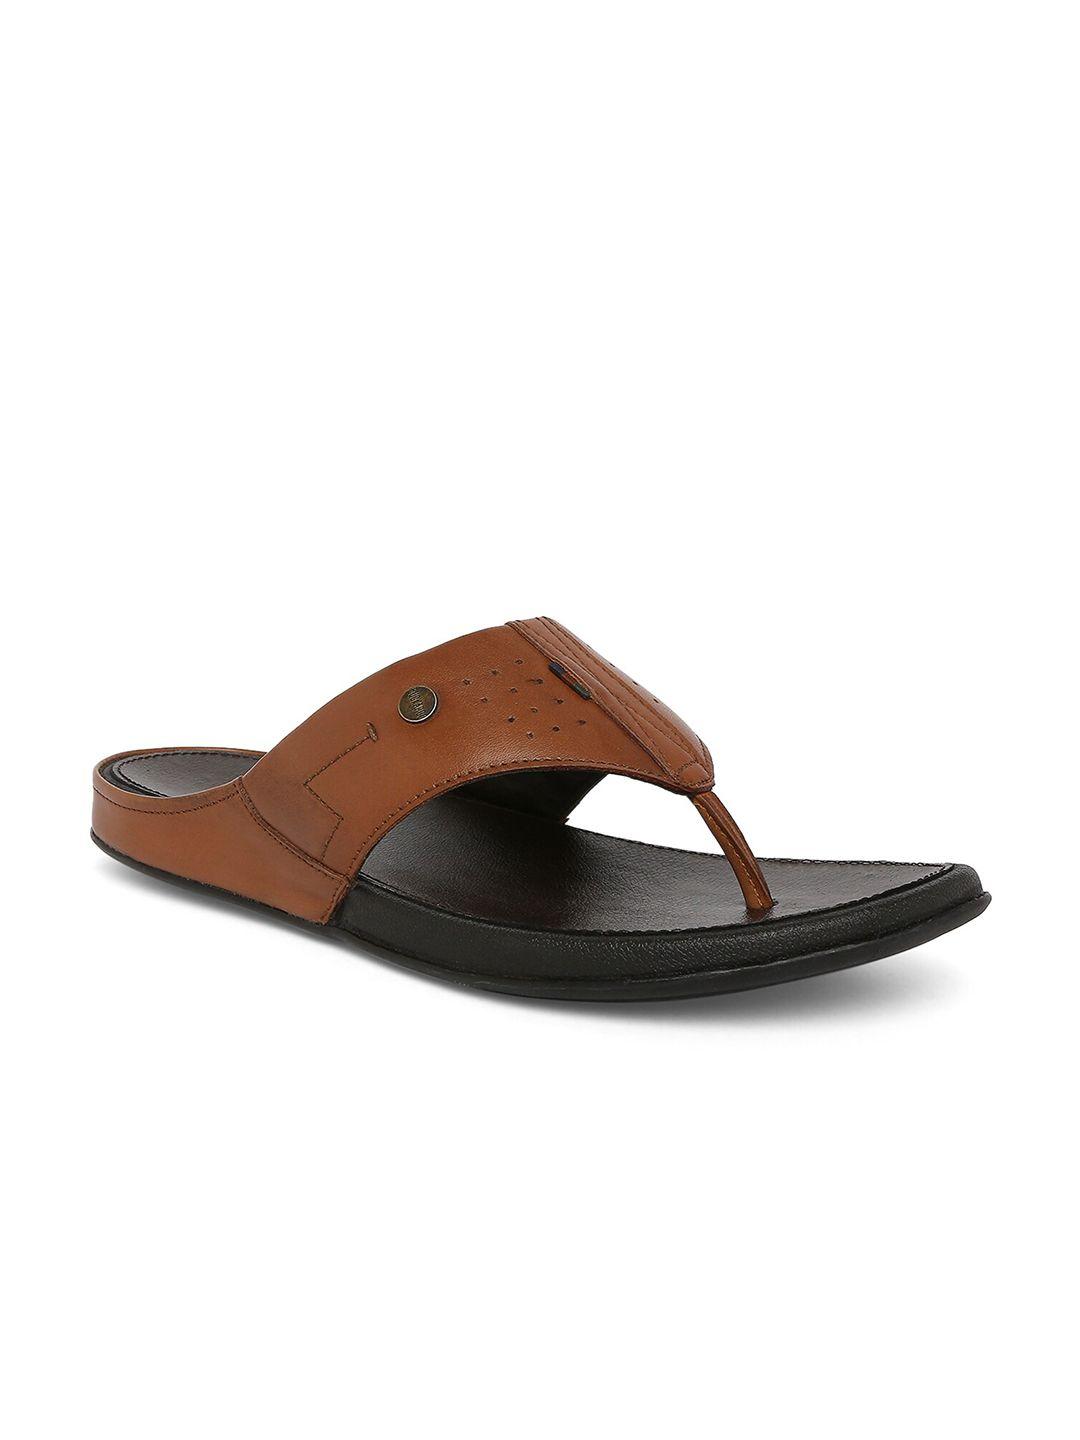 buckaroo-men-leather-comfort-sandals